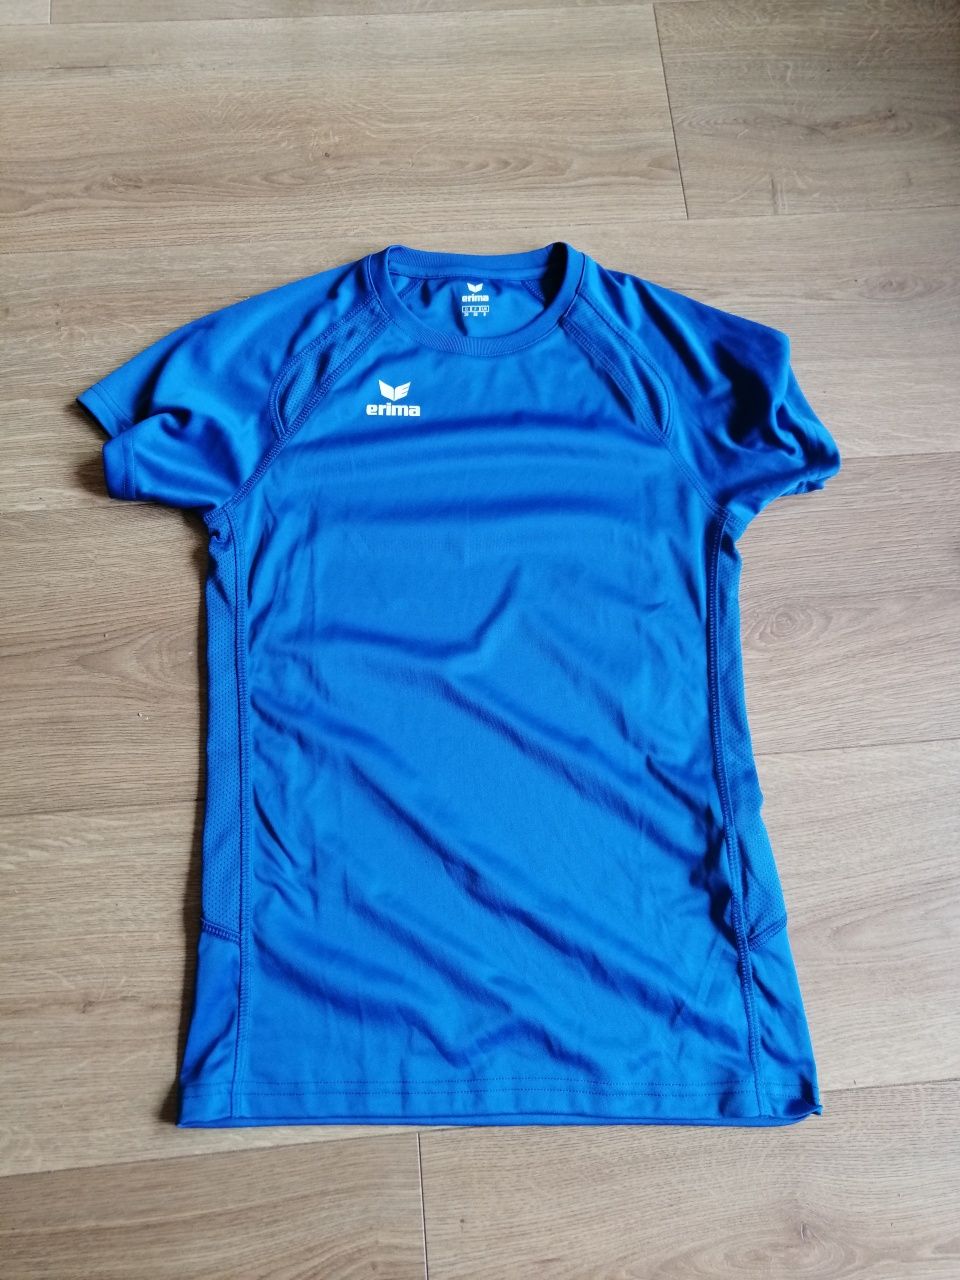 Koszulka sportowa, erima, niebieska, rozm. 36, nowa